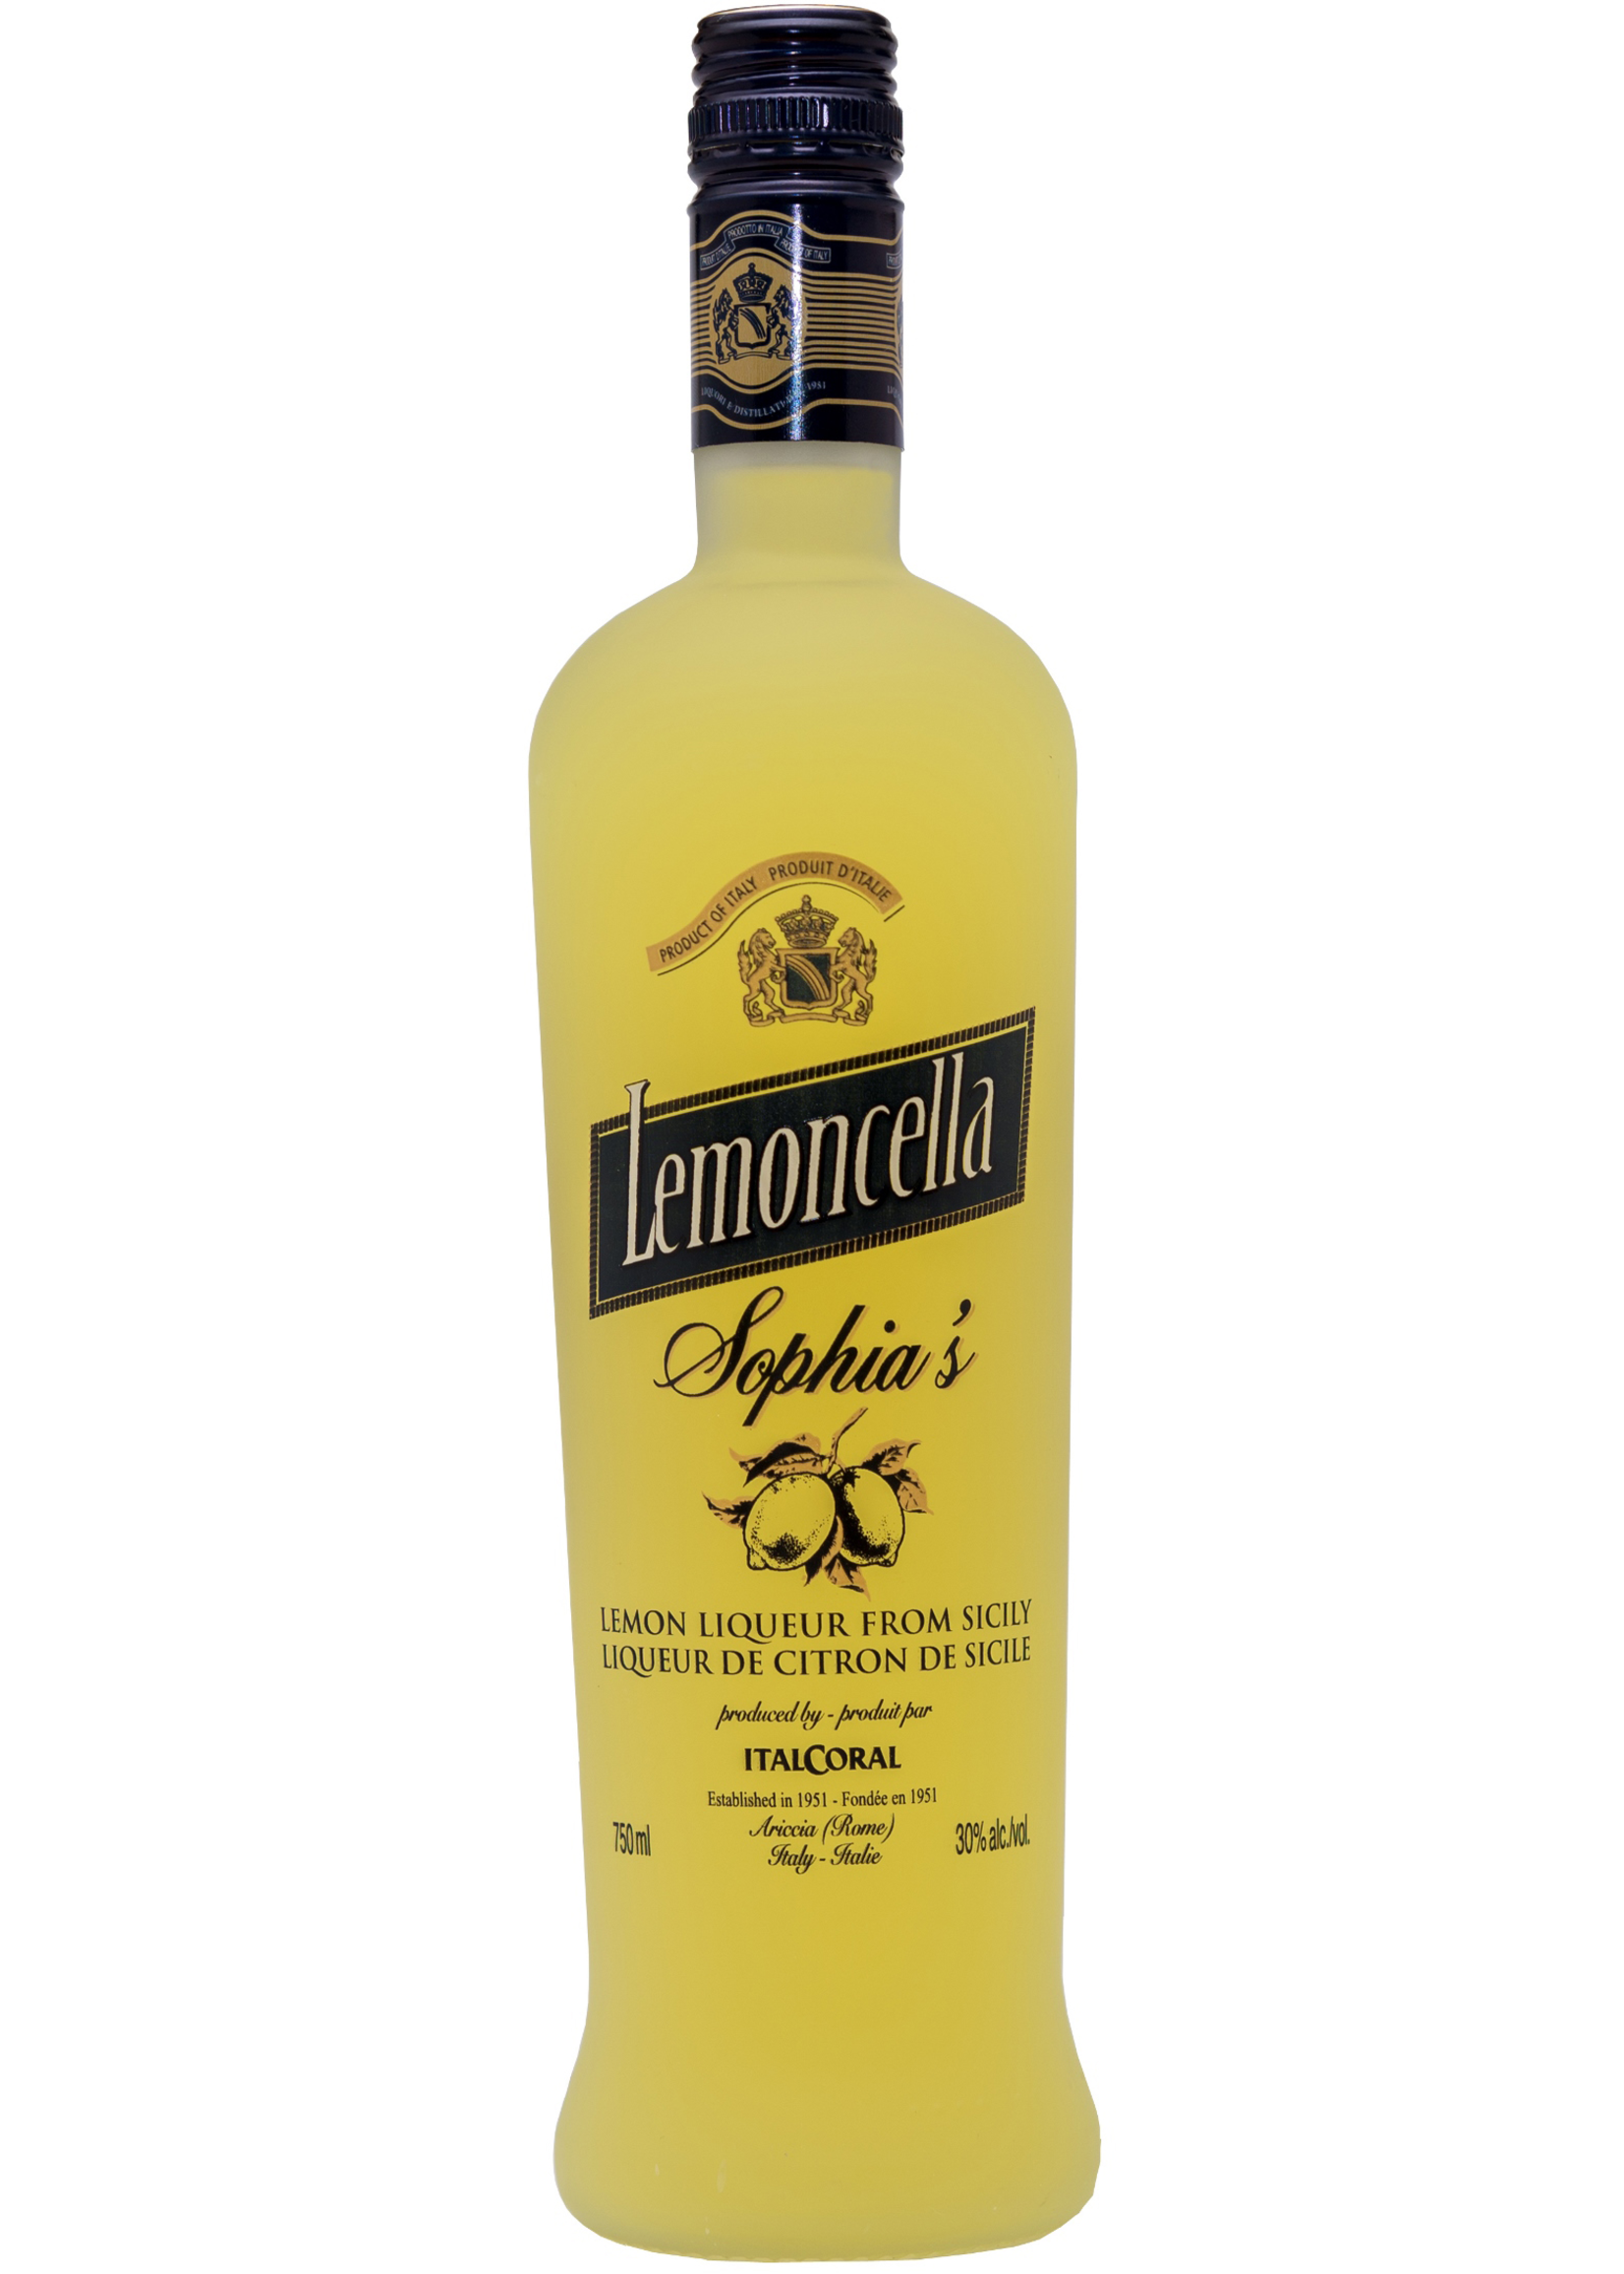 ItalCoral ItalCoral / Sophia's Lemoncella / 750mL